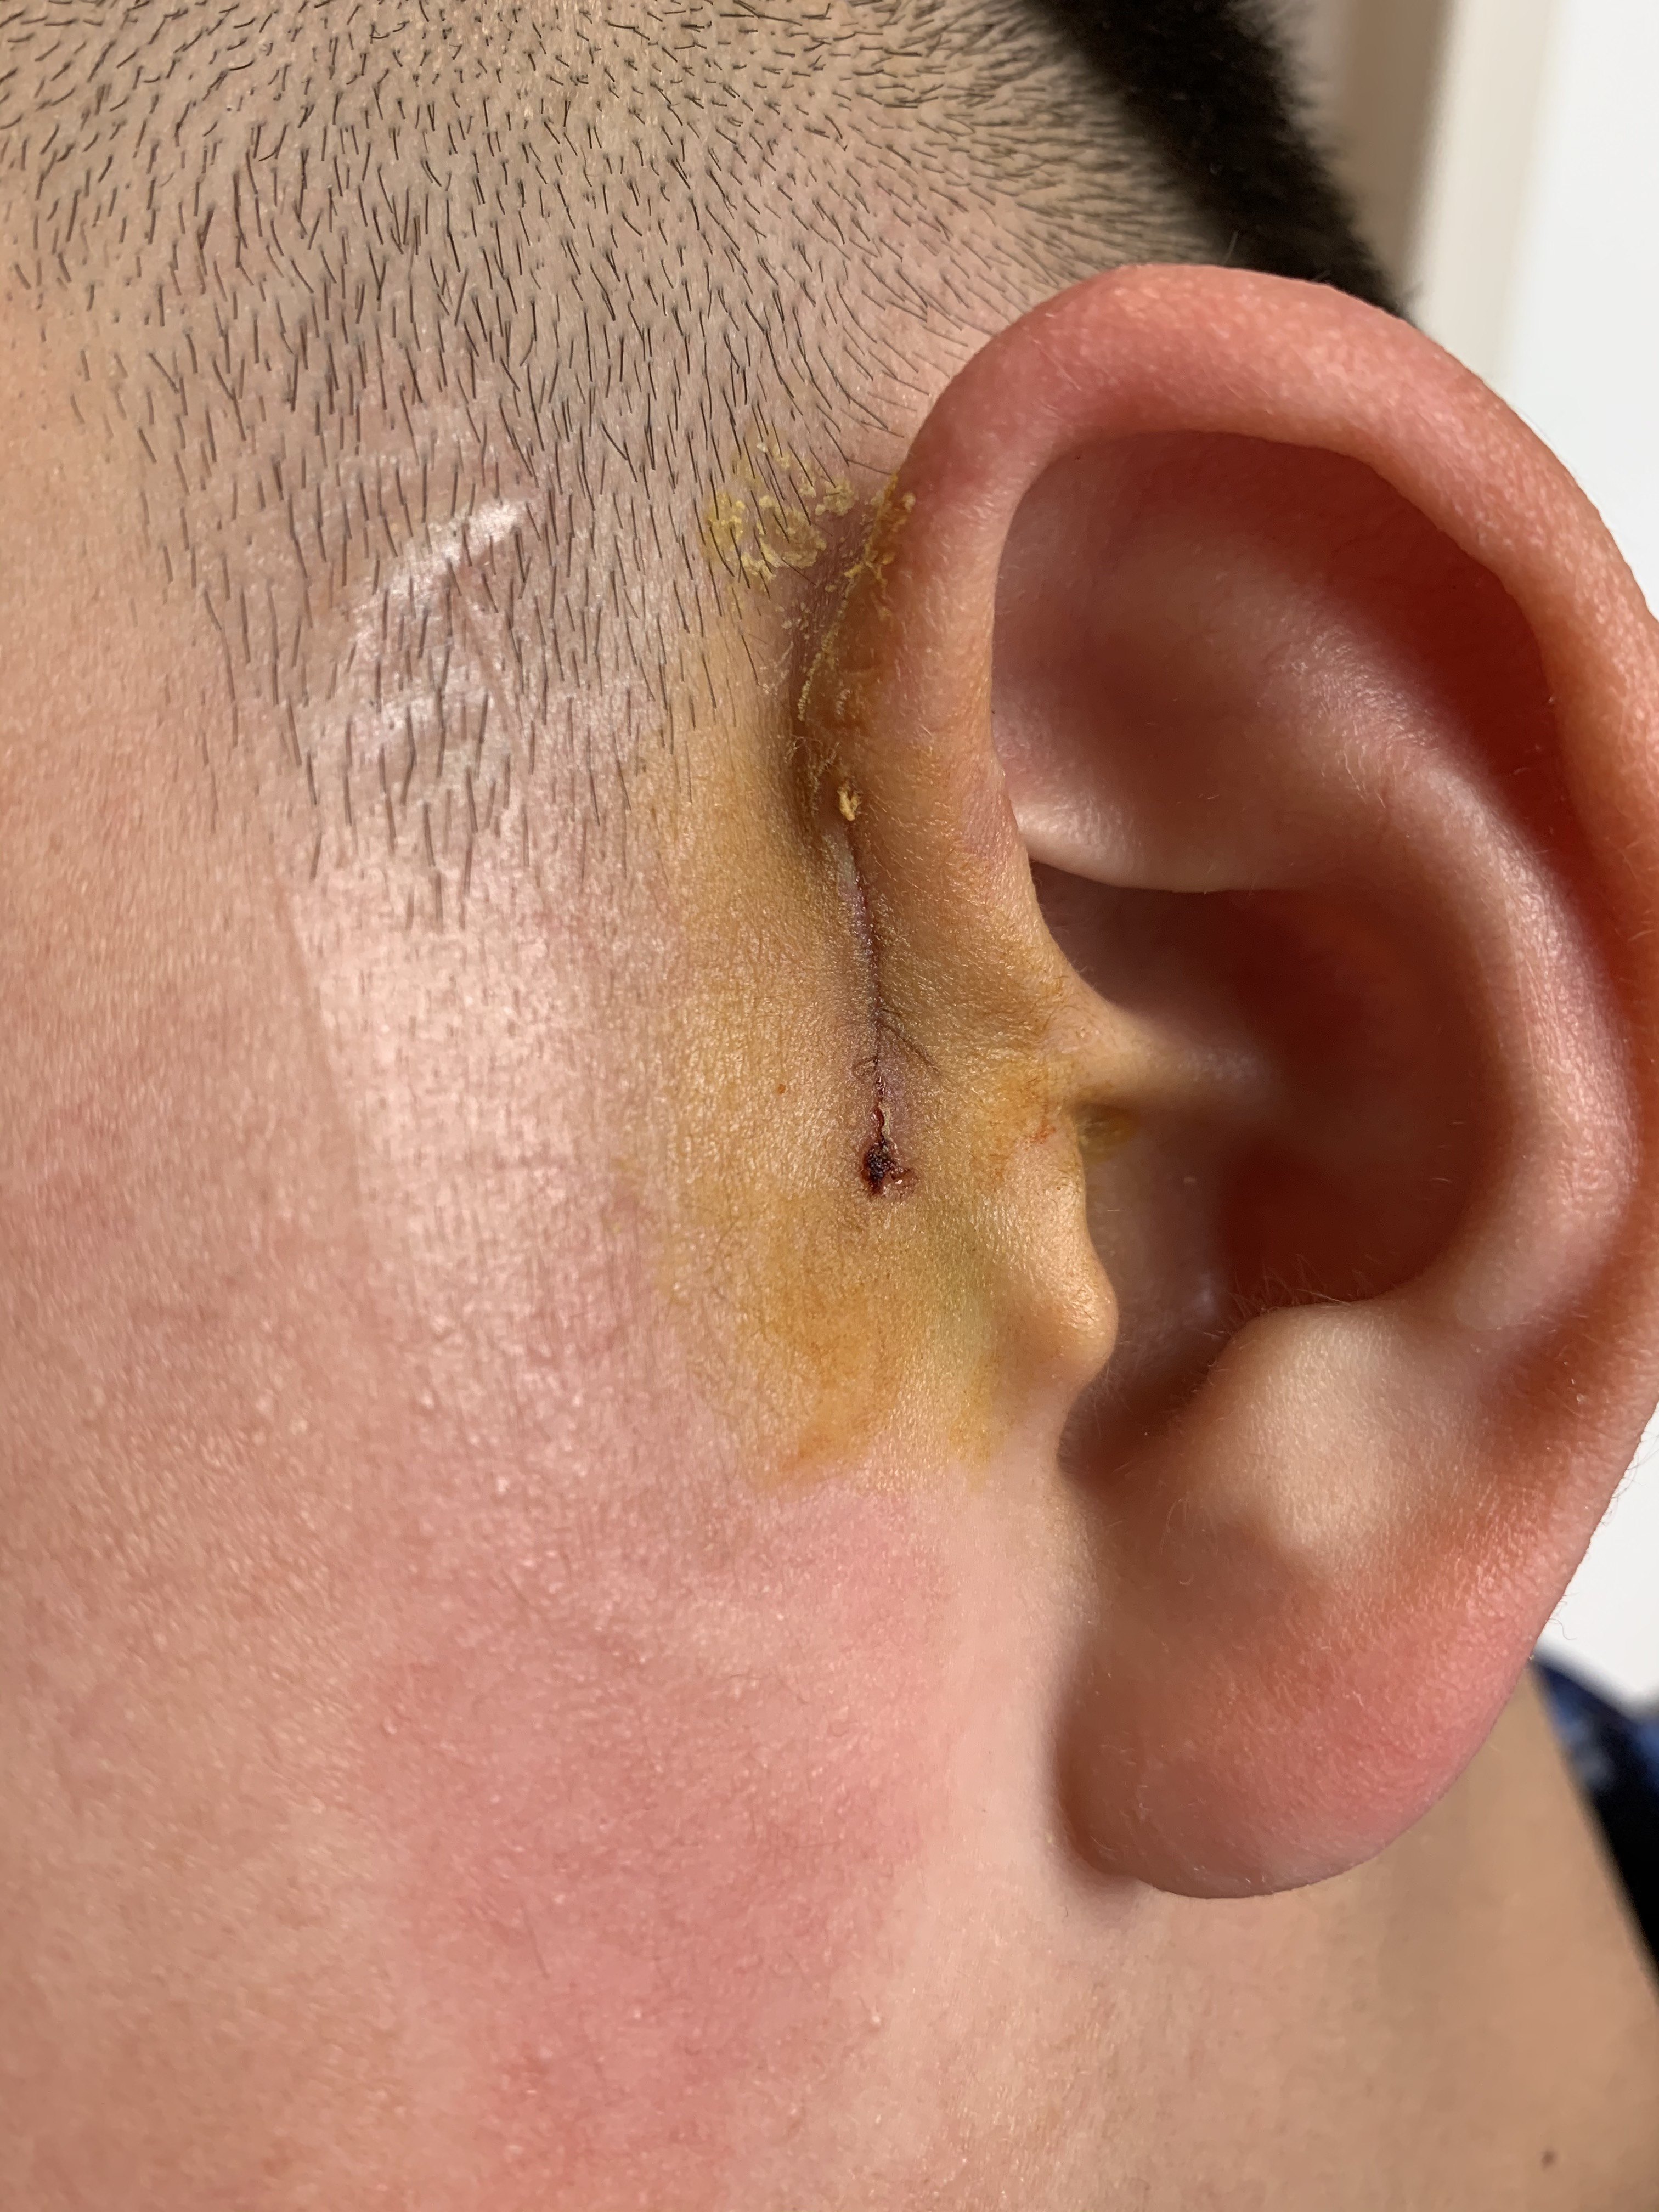 耳前瘘管微创手术及术后指南